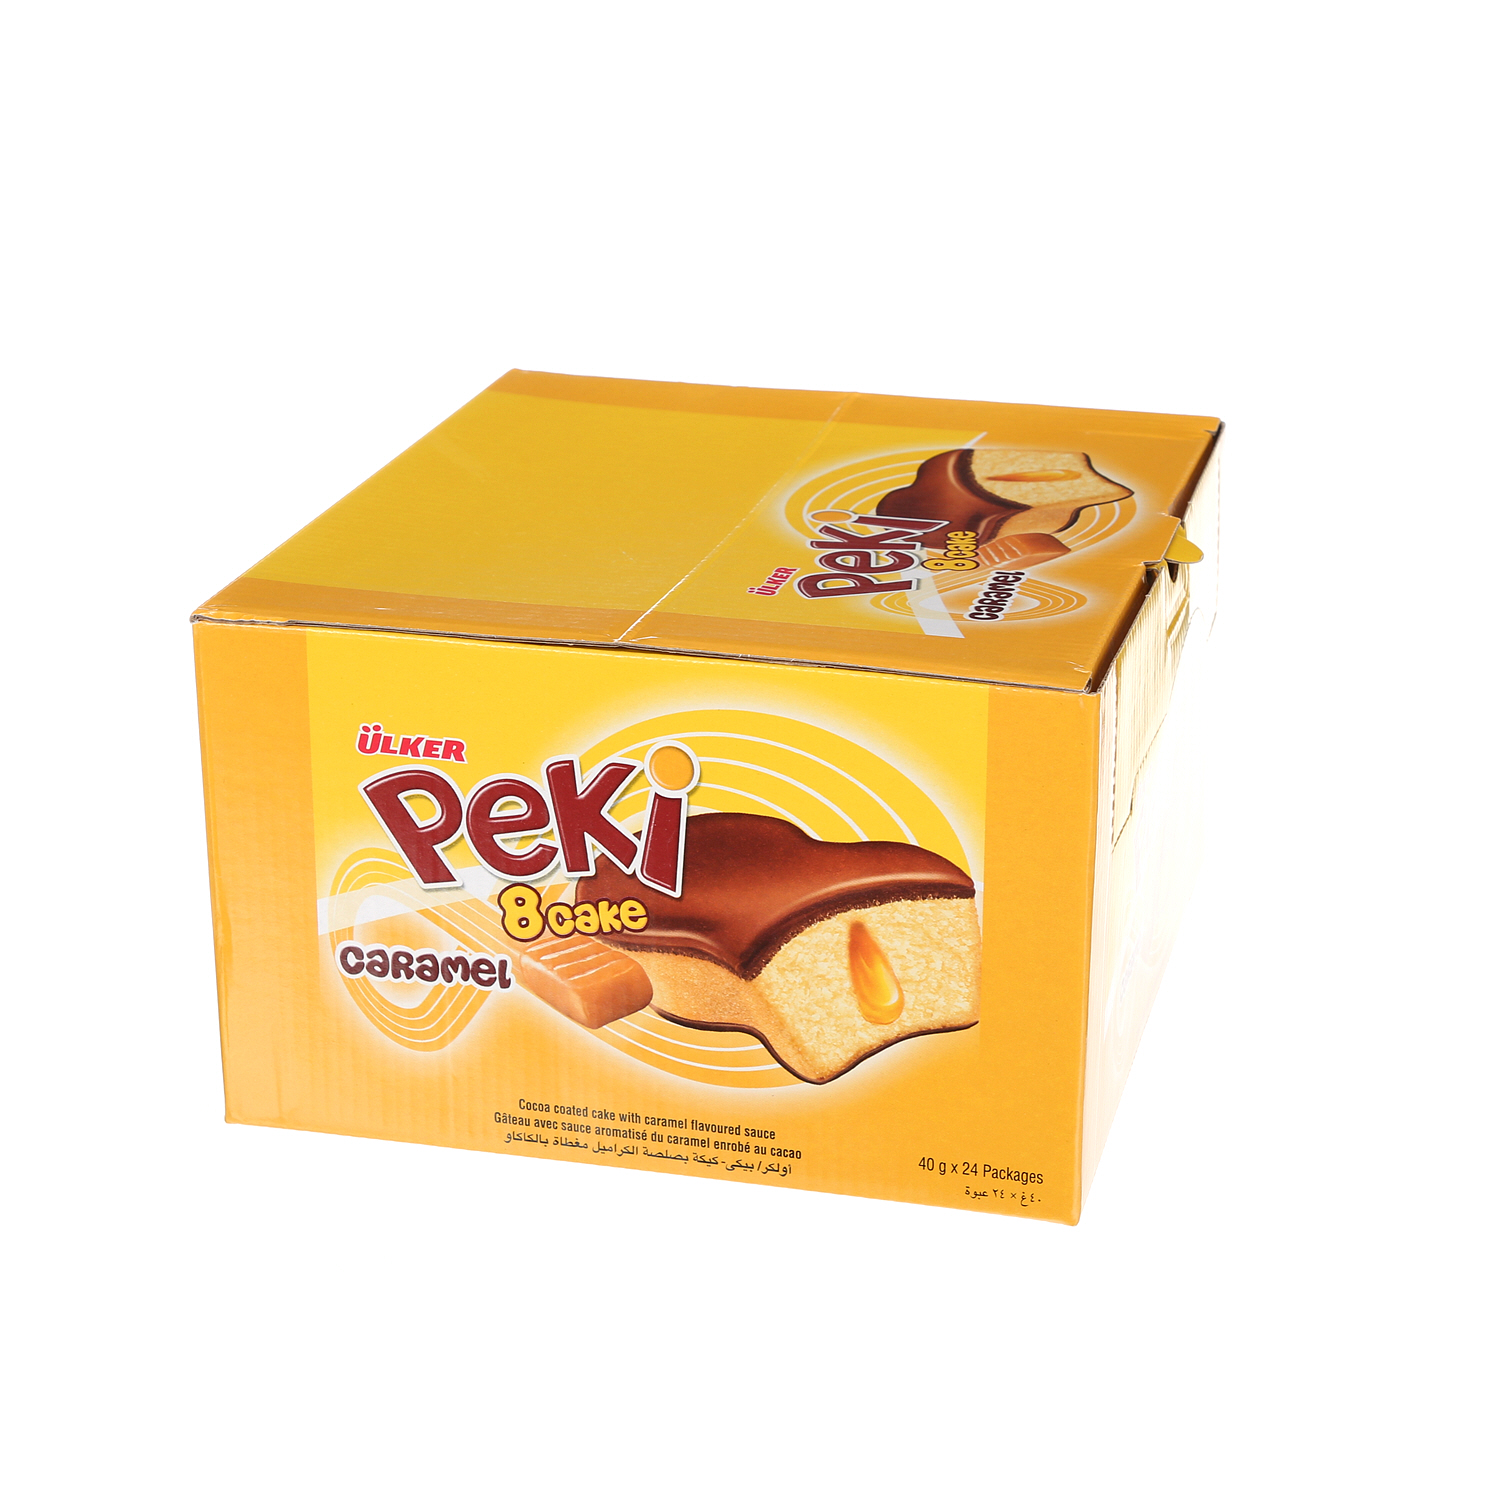 Ulker Peki 8 Caramel Cake 40gm × 24'S